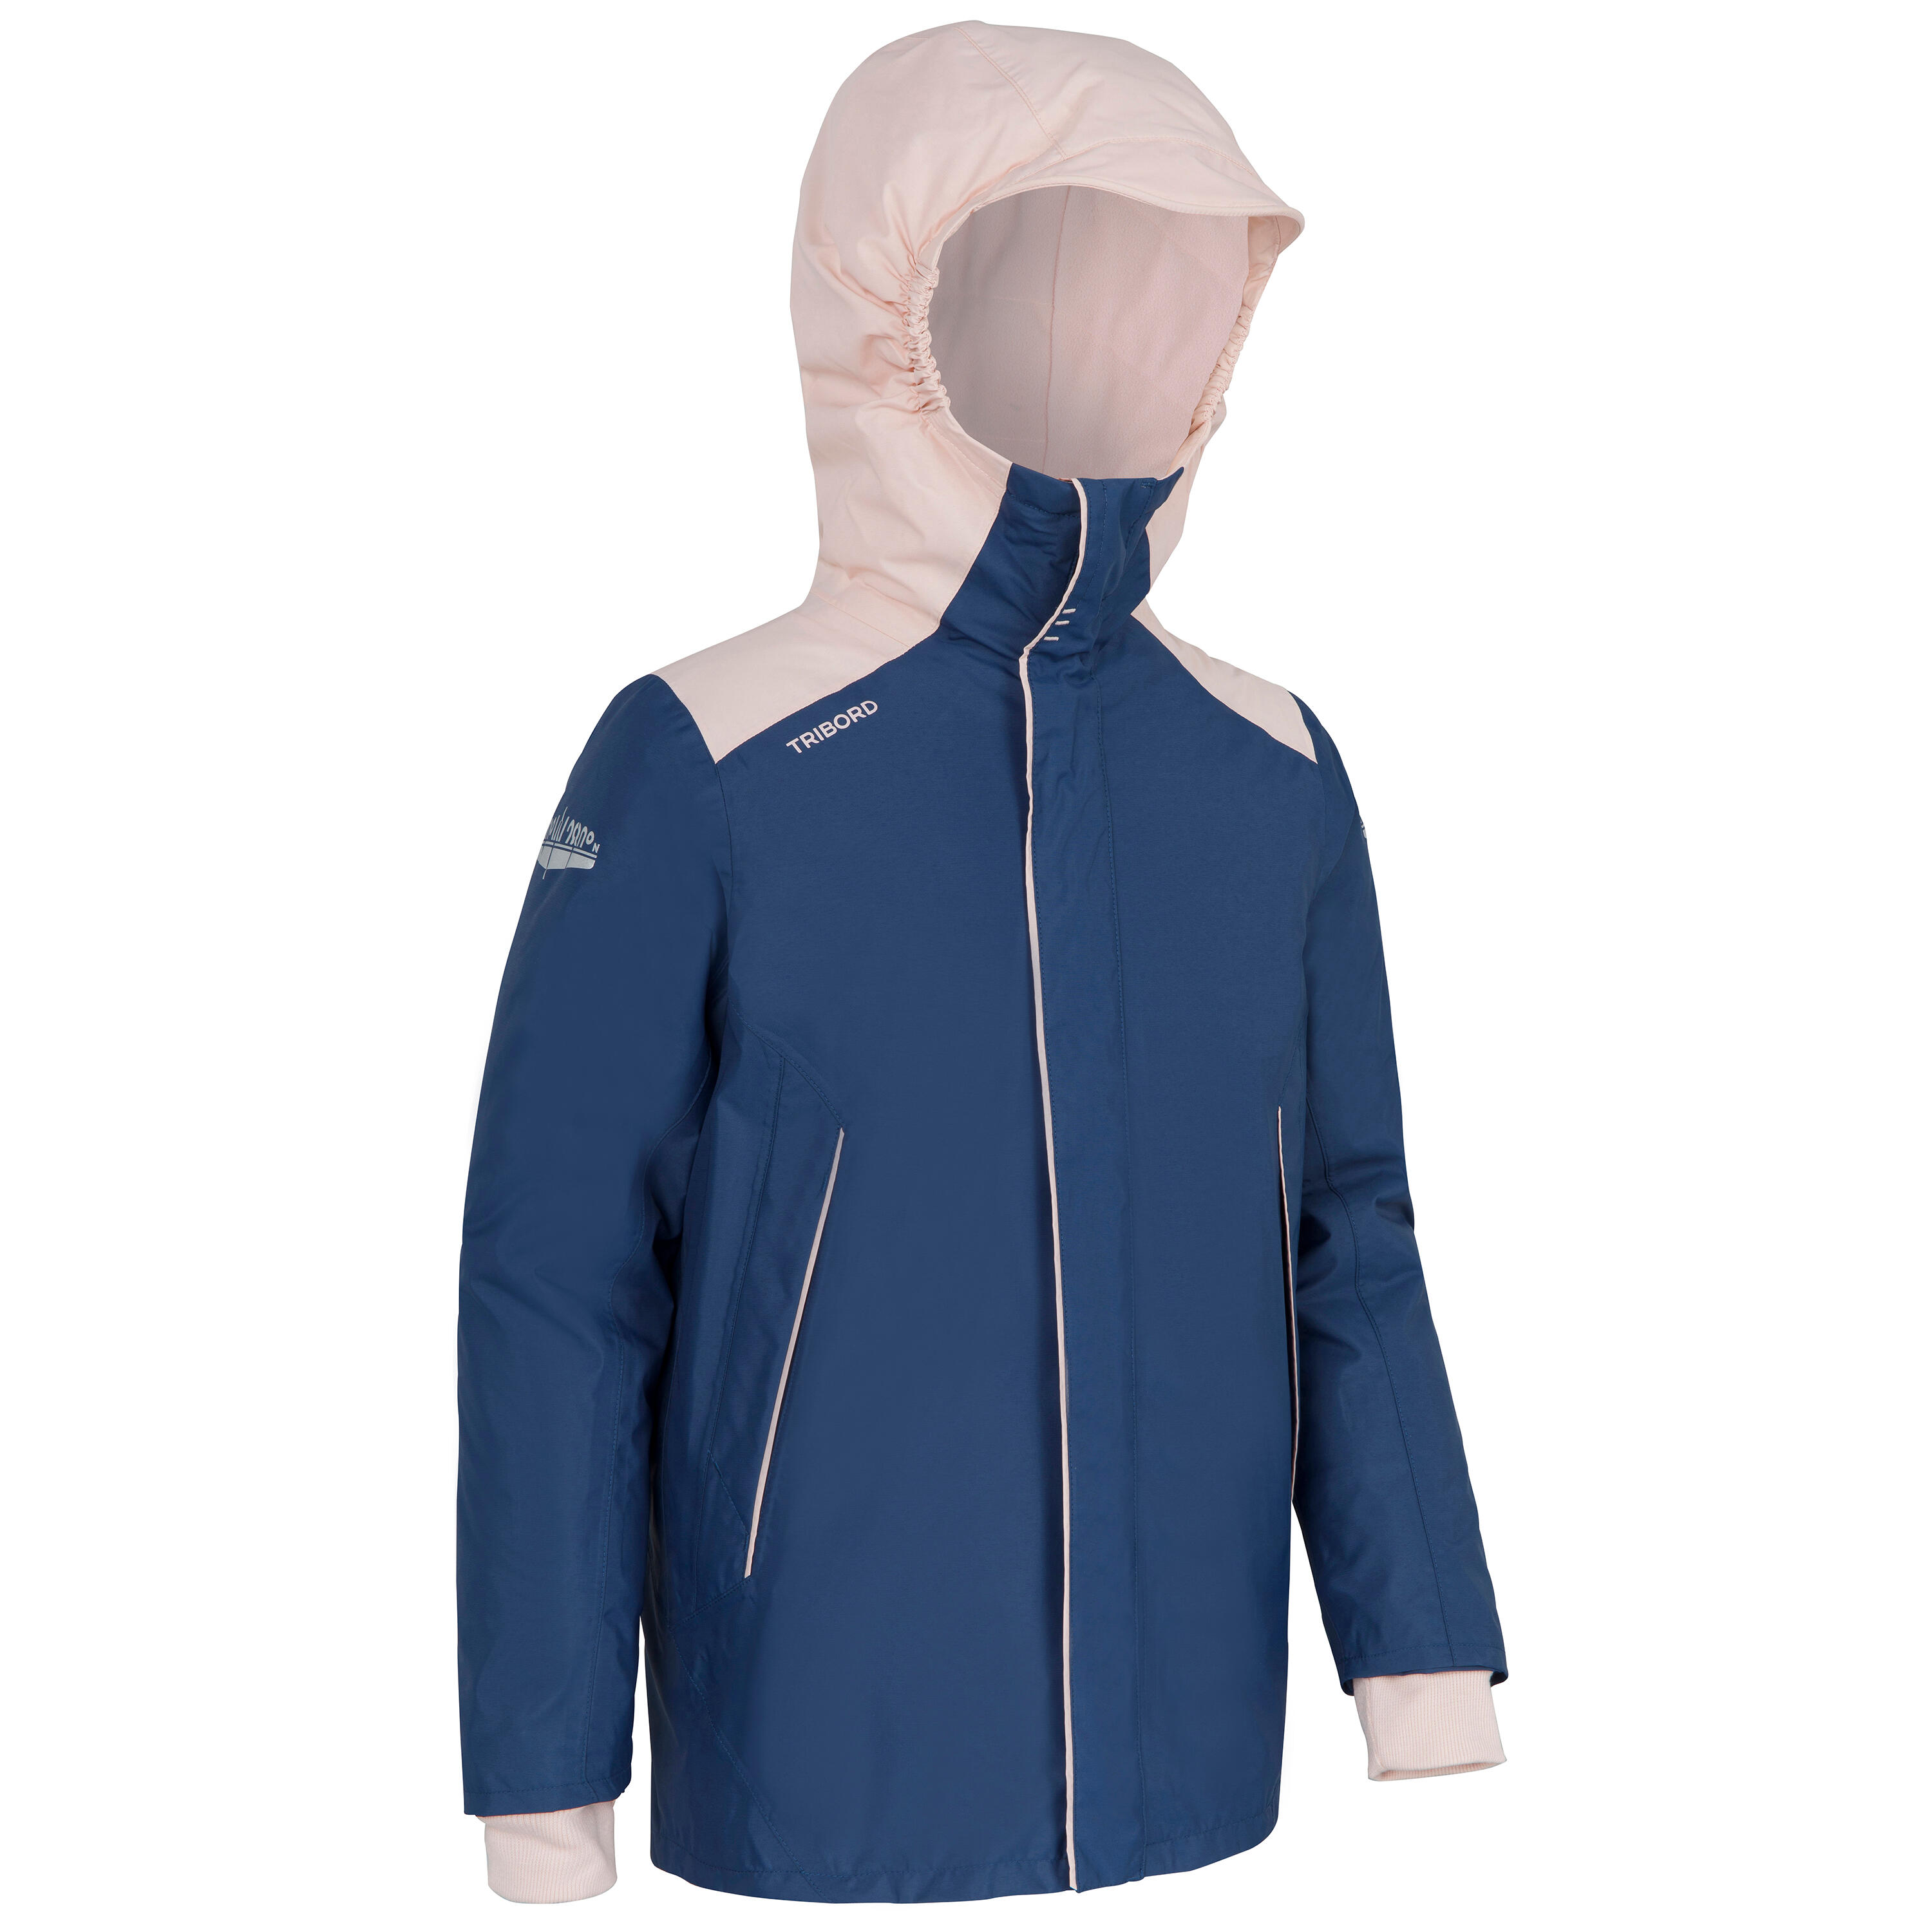 Amazon Moda Bambino Abbigliamento Cappotti e giubbotti Giacche Giacche a vento Blu Giacca Impermeabile Unisex bambino 80 